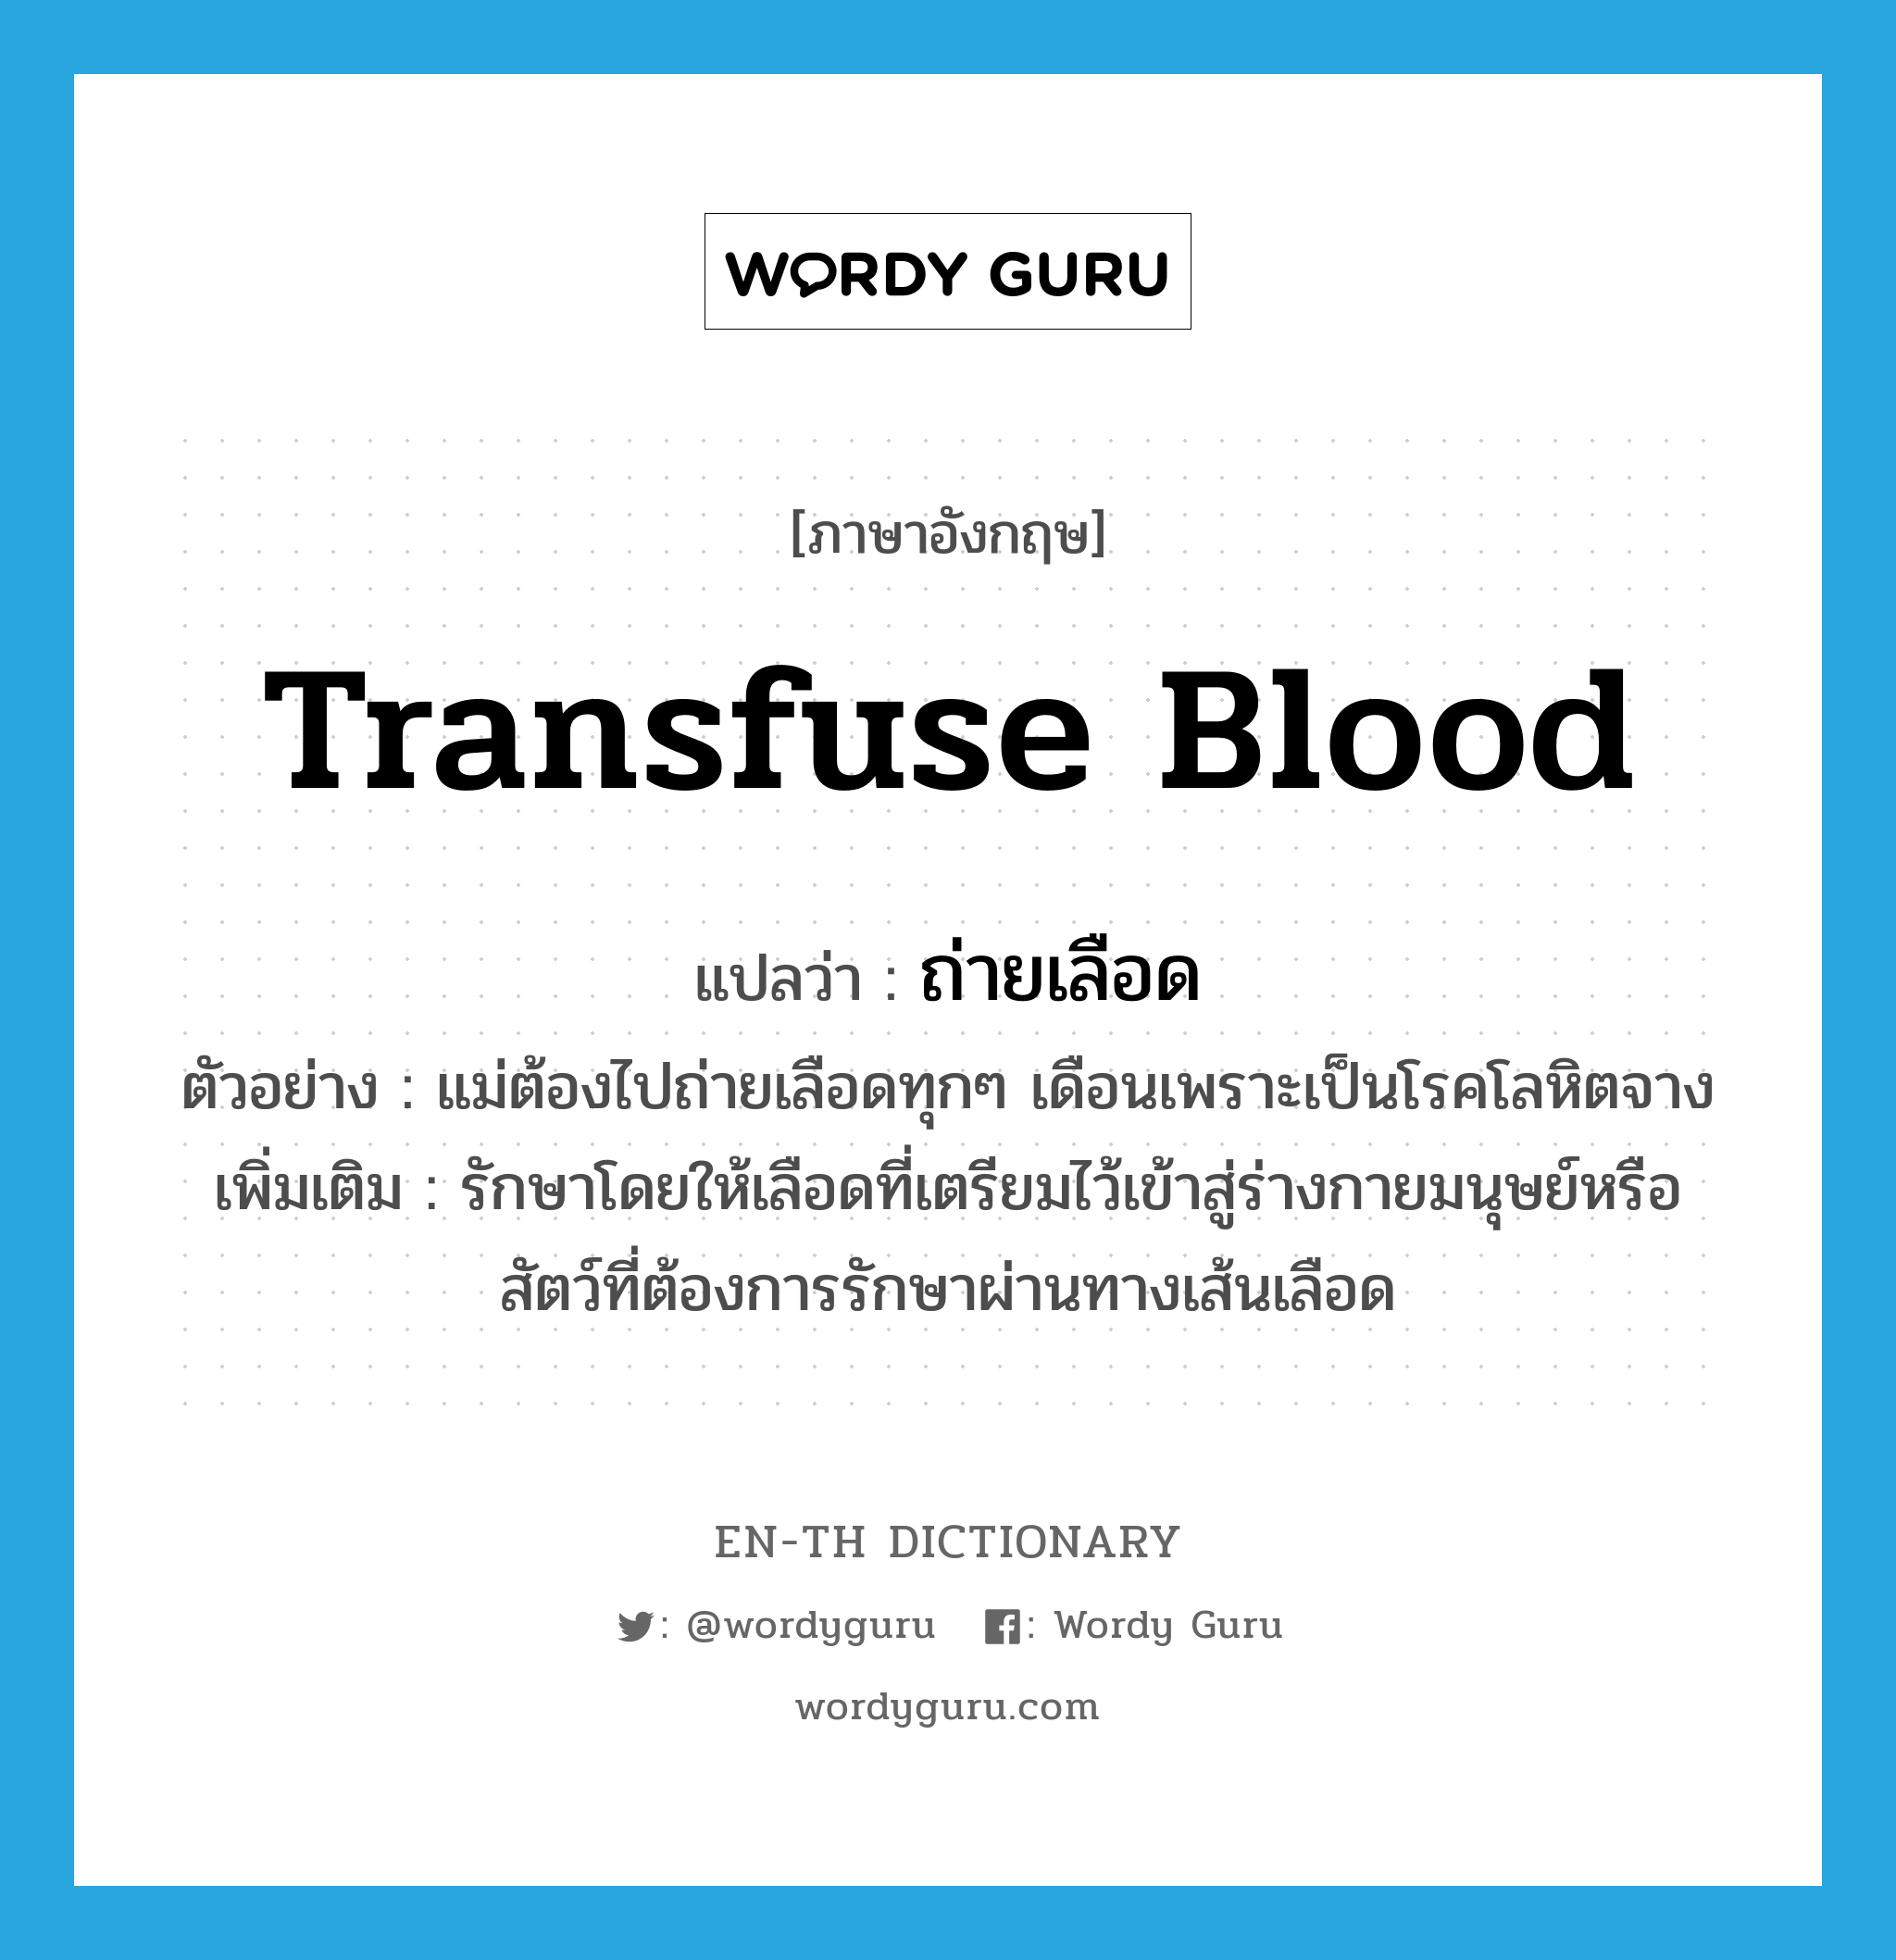 ถ่ายเลือด ภาษาอังกฤษ?, คำศัพท์ภาษาอังกฤษ ถ่ายเลือด แปลว่า transfuse blood ประเภท V ตัวอย่าง แม่ต้องไปถ่ายเลือดทุกๆ เดือนเพราะเป็นโรคโลหิตจาง เพิ่มเติม รักษาโดยให้เลือดที่เตรียมไว้เข้าสู่ร่างกายมนุษย์หรือสัตว์ที่ต้องการรักษาผ่านทางเส้นเลือด หมวด V